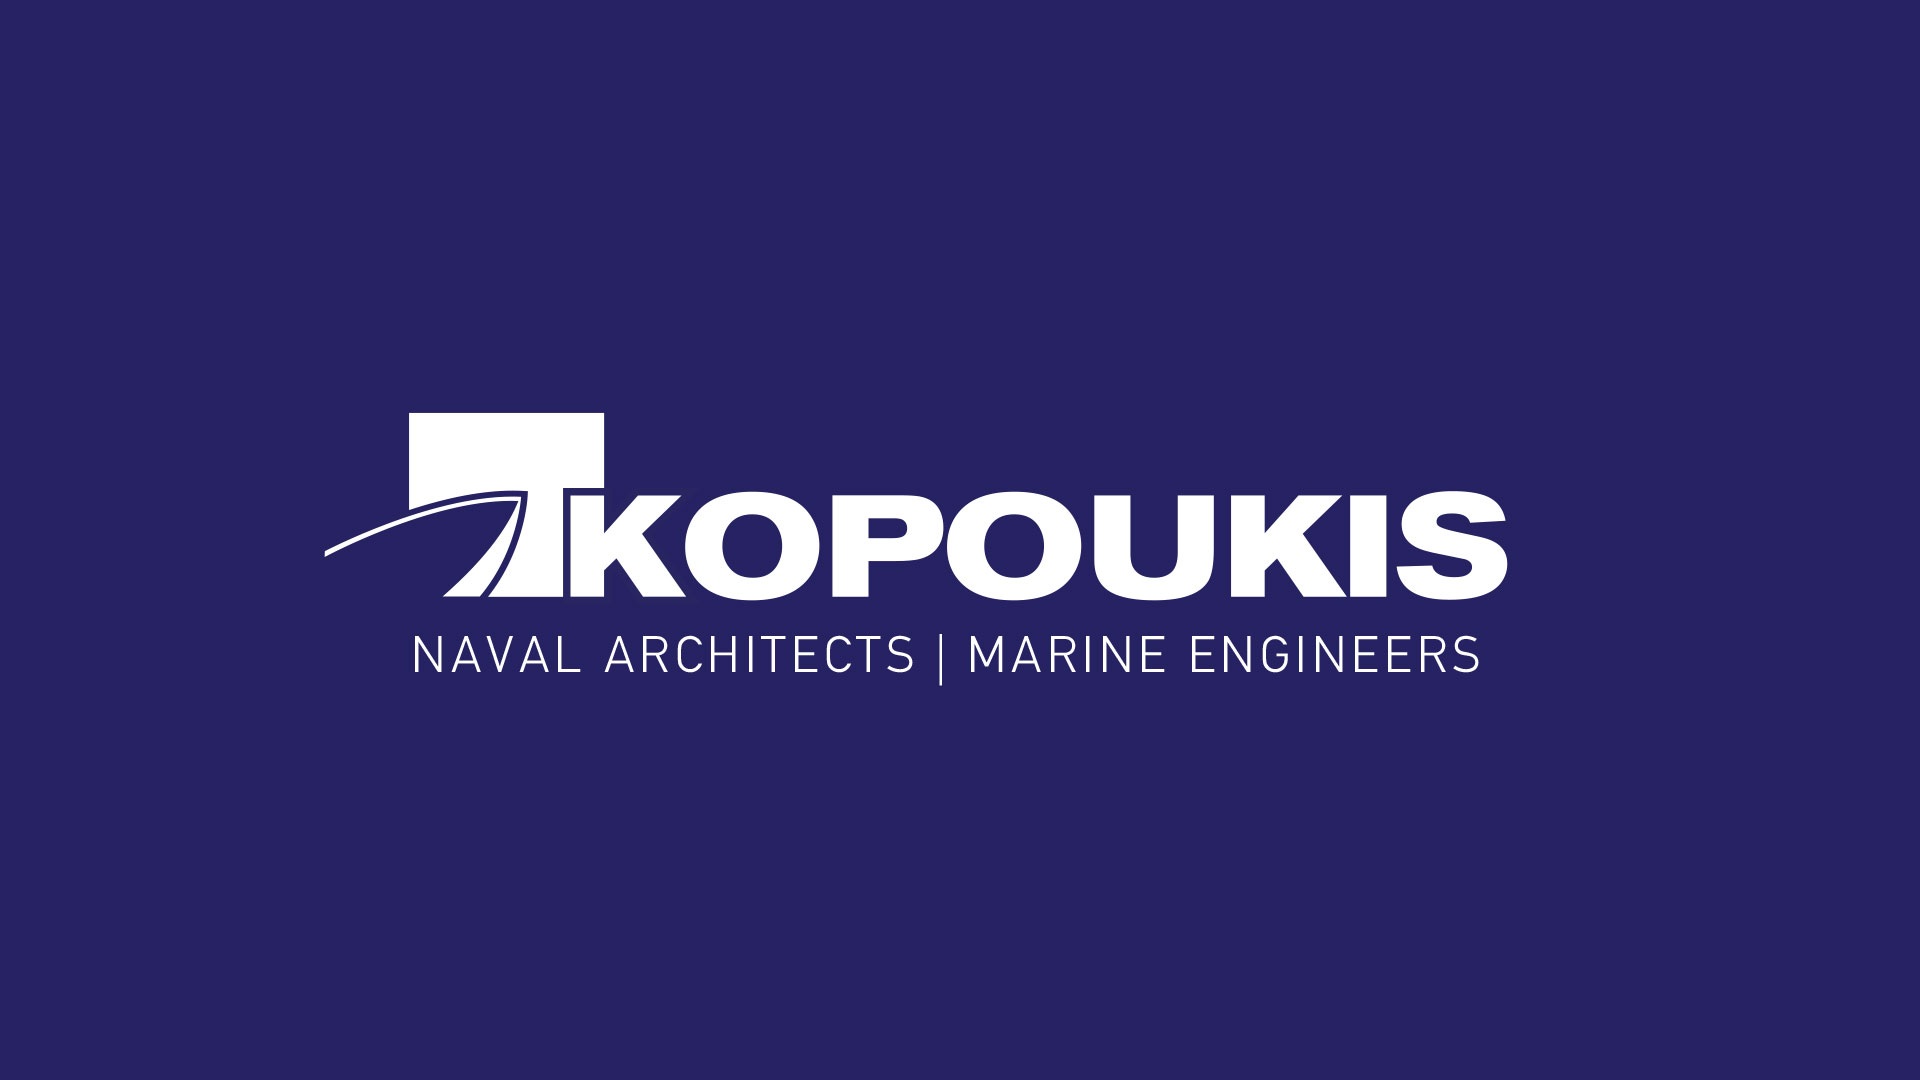 Kopoukis Corporate Id & Website